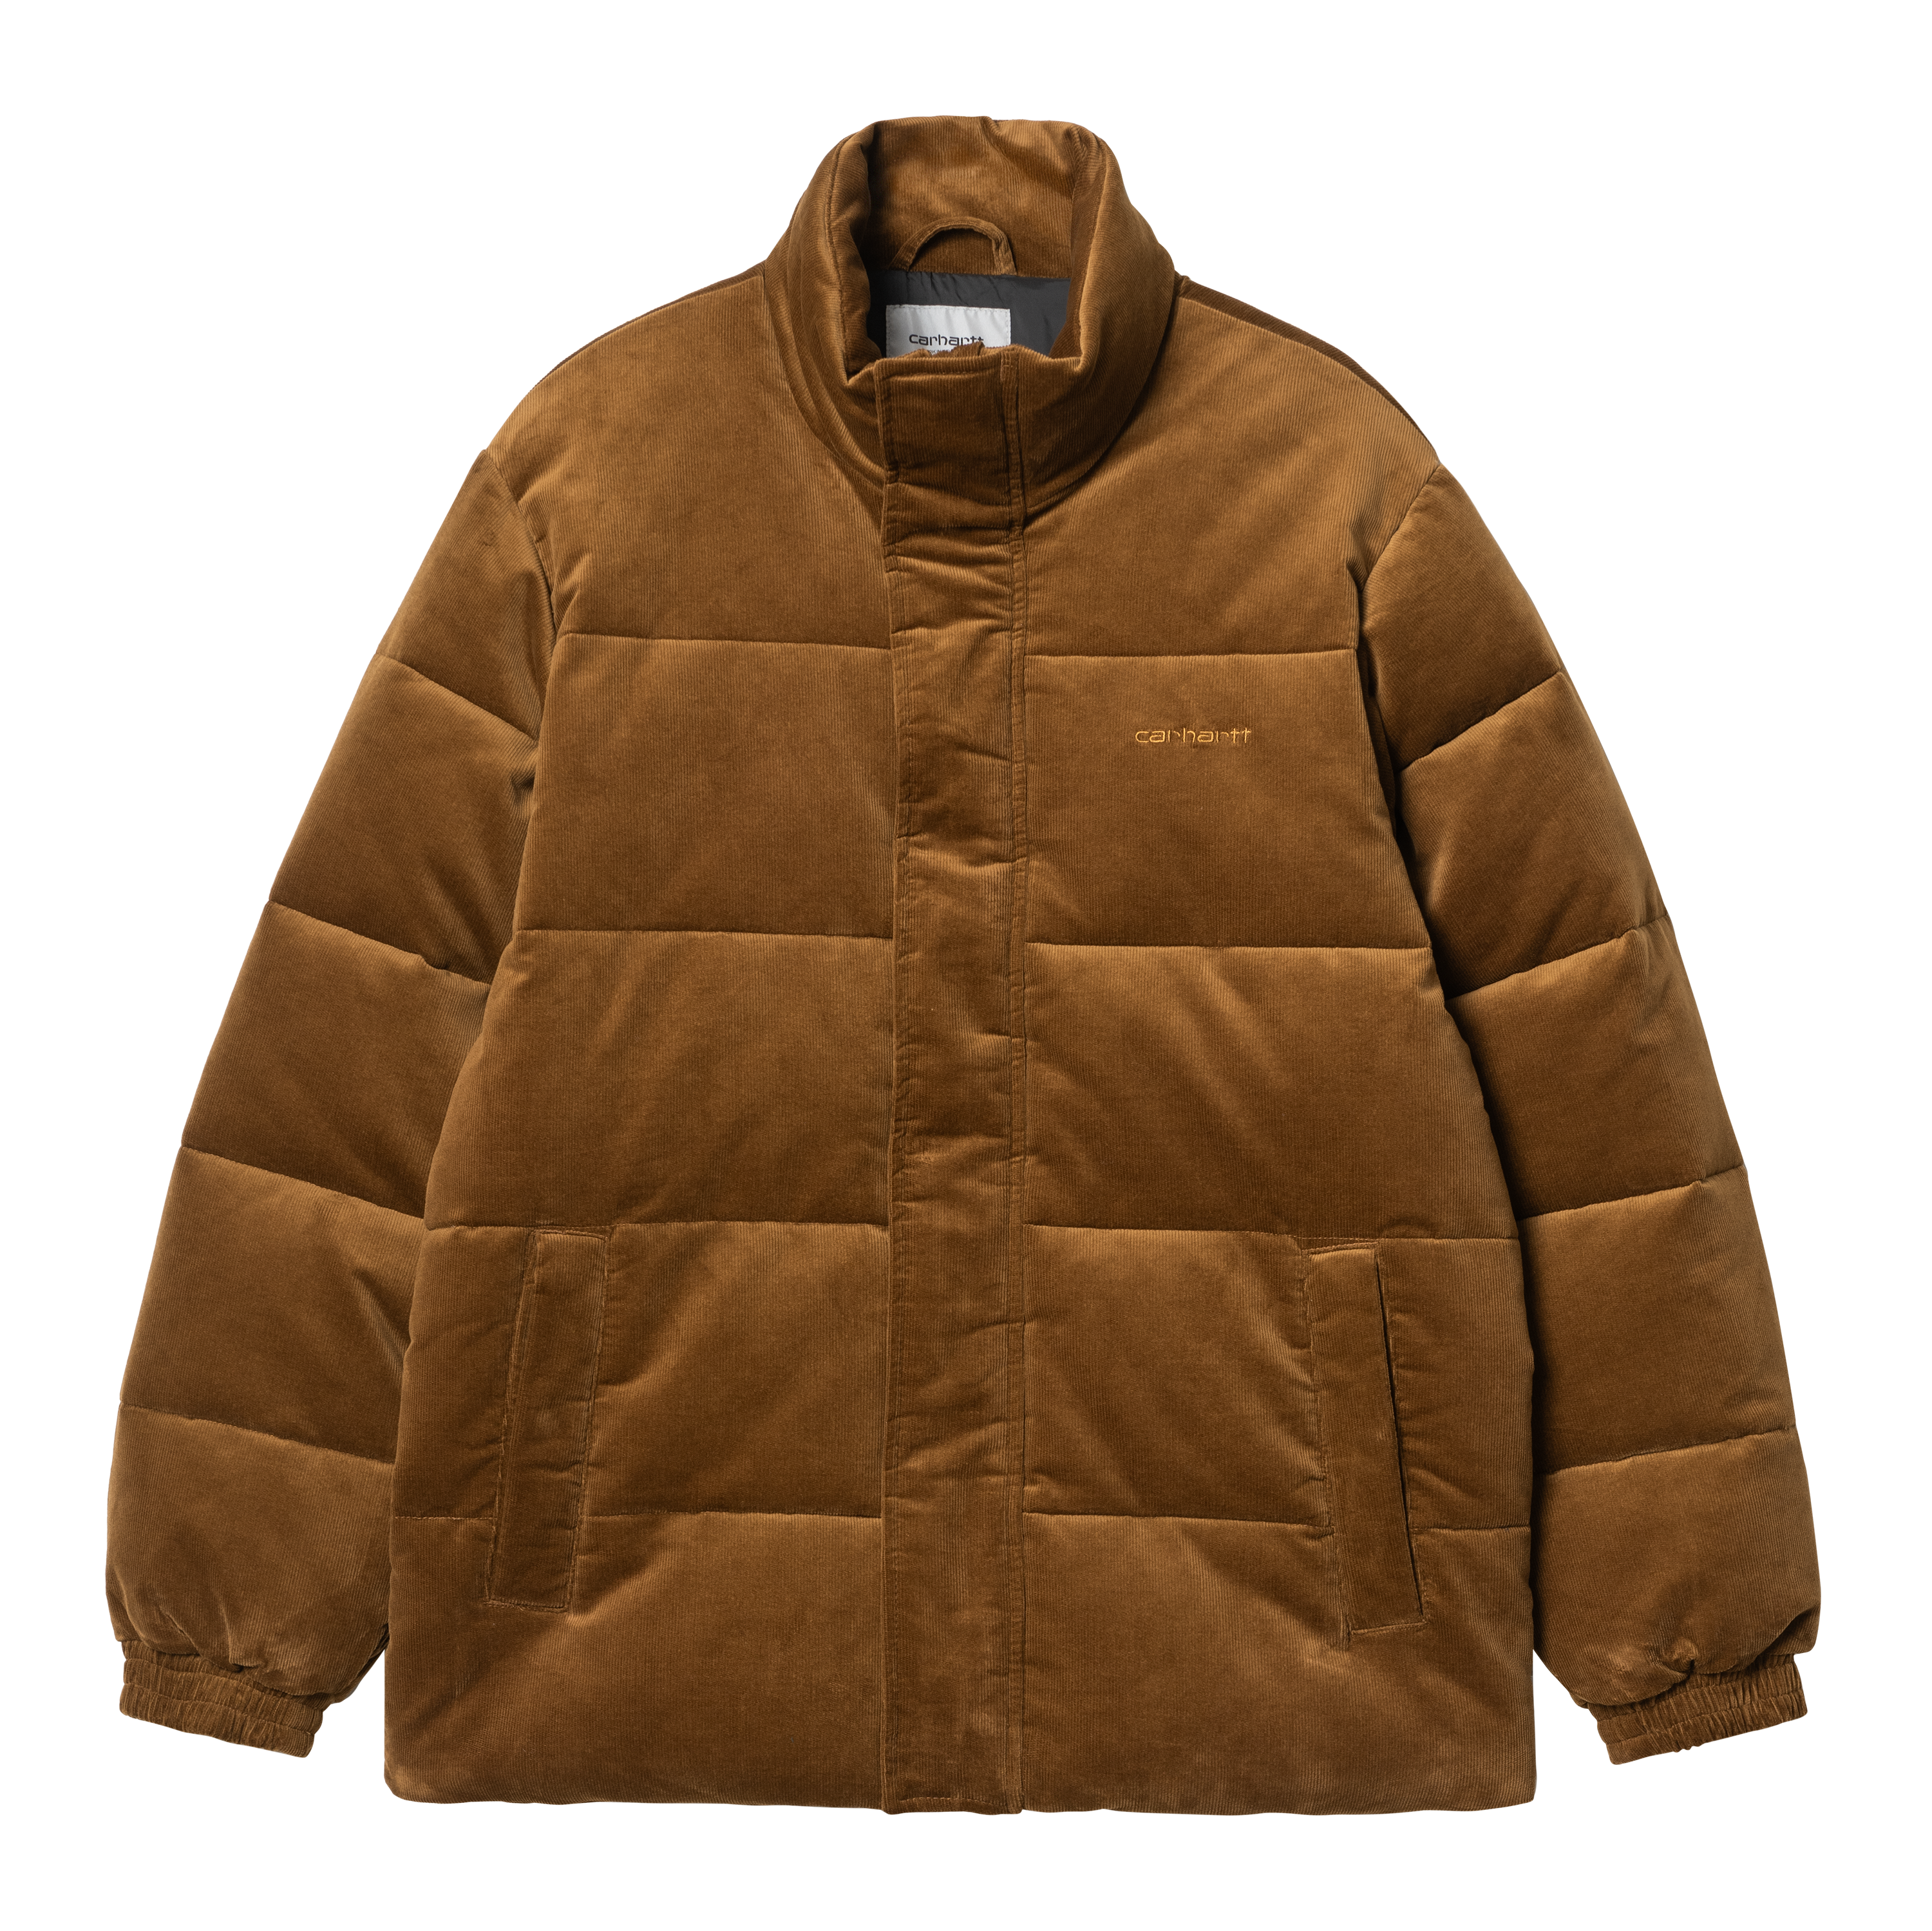 Carhartt WIP Layton Jacket in Brown